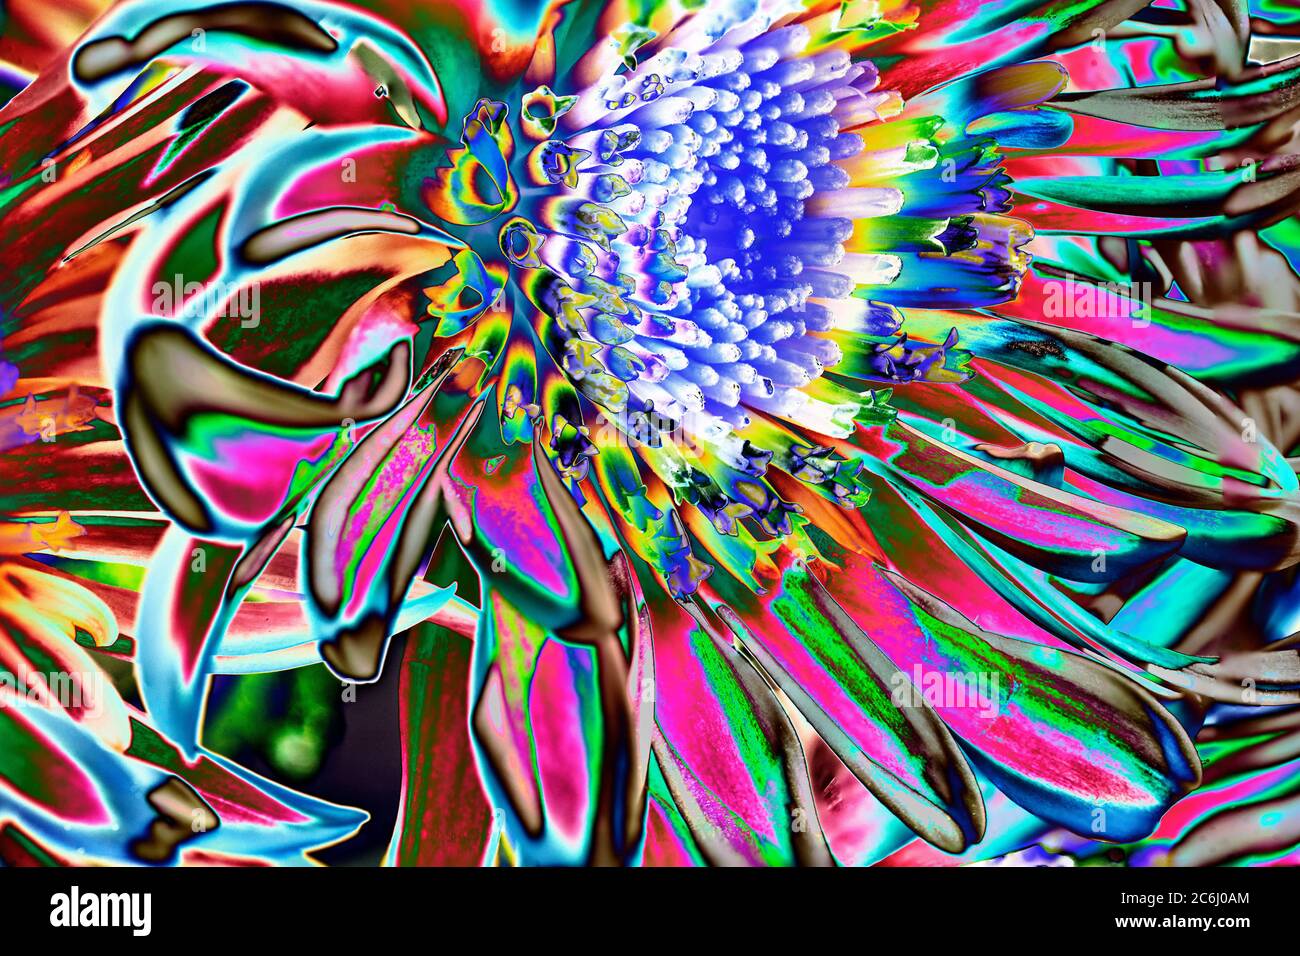 Image de fleur macro manipulée numériquement. Couleurs éclatantes. Conceptuel. Vert, jaune, nuances, arrangement de têtes de fleurs de chrysanthème. Banque D'Images